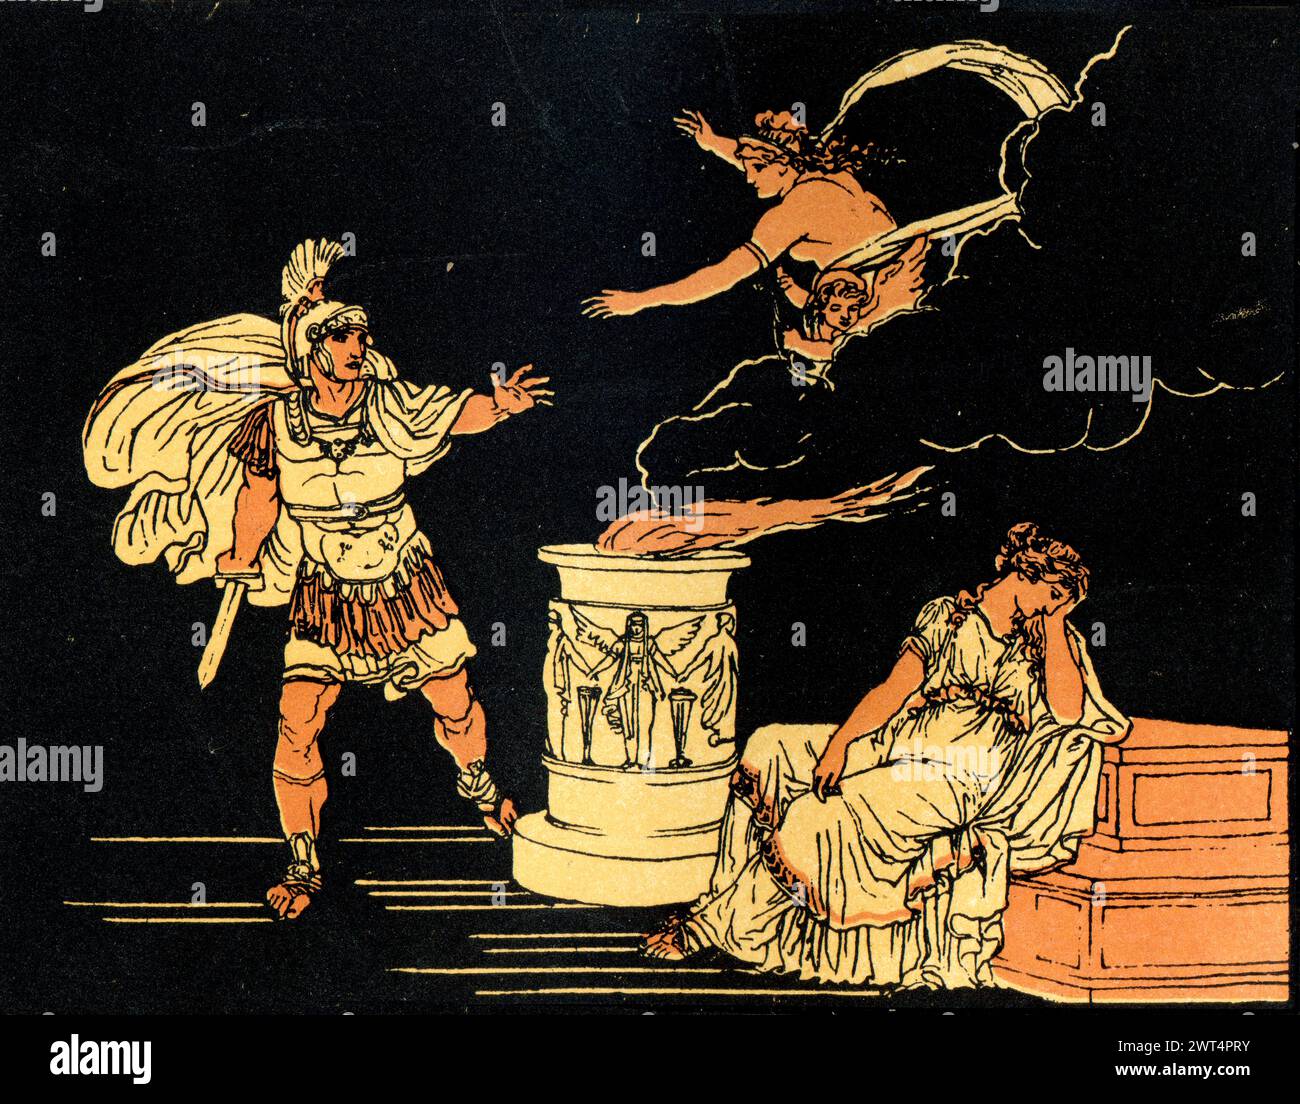 Illustrazione vintage Enea e Elena di Troia, scena dall'Eneide un poema epico latino che racconta la leggendaria storia di Enea, un troiano fuggito dal Foto Stock